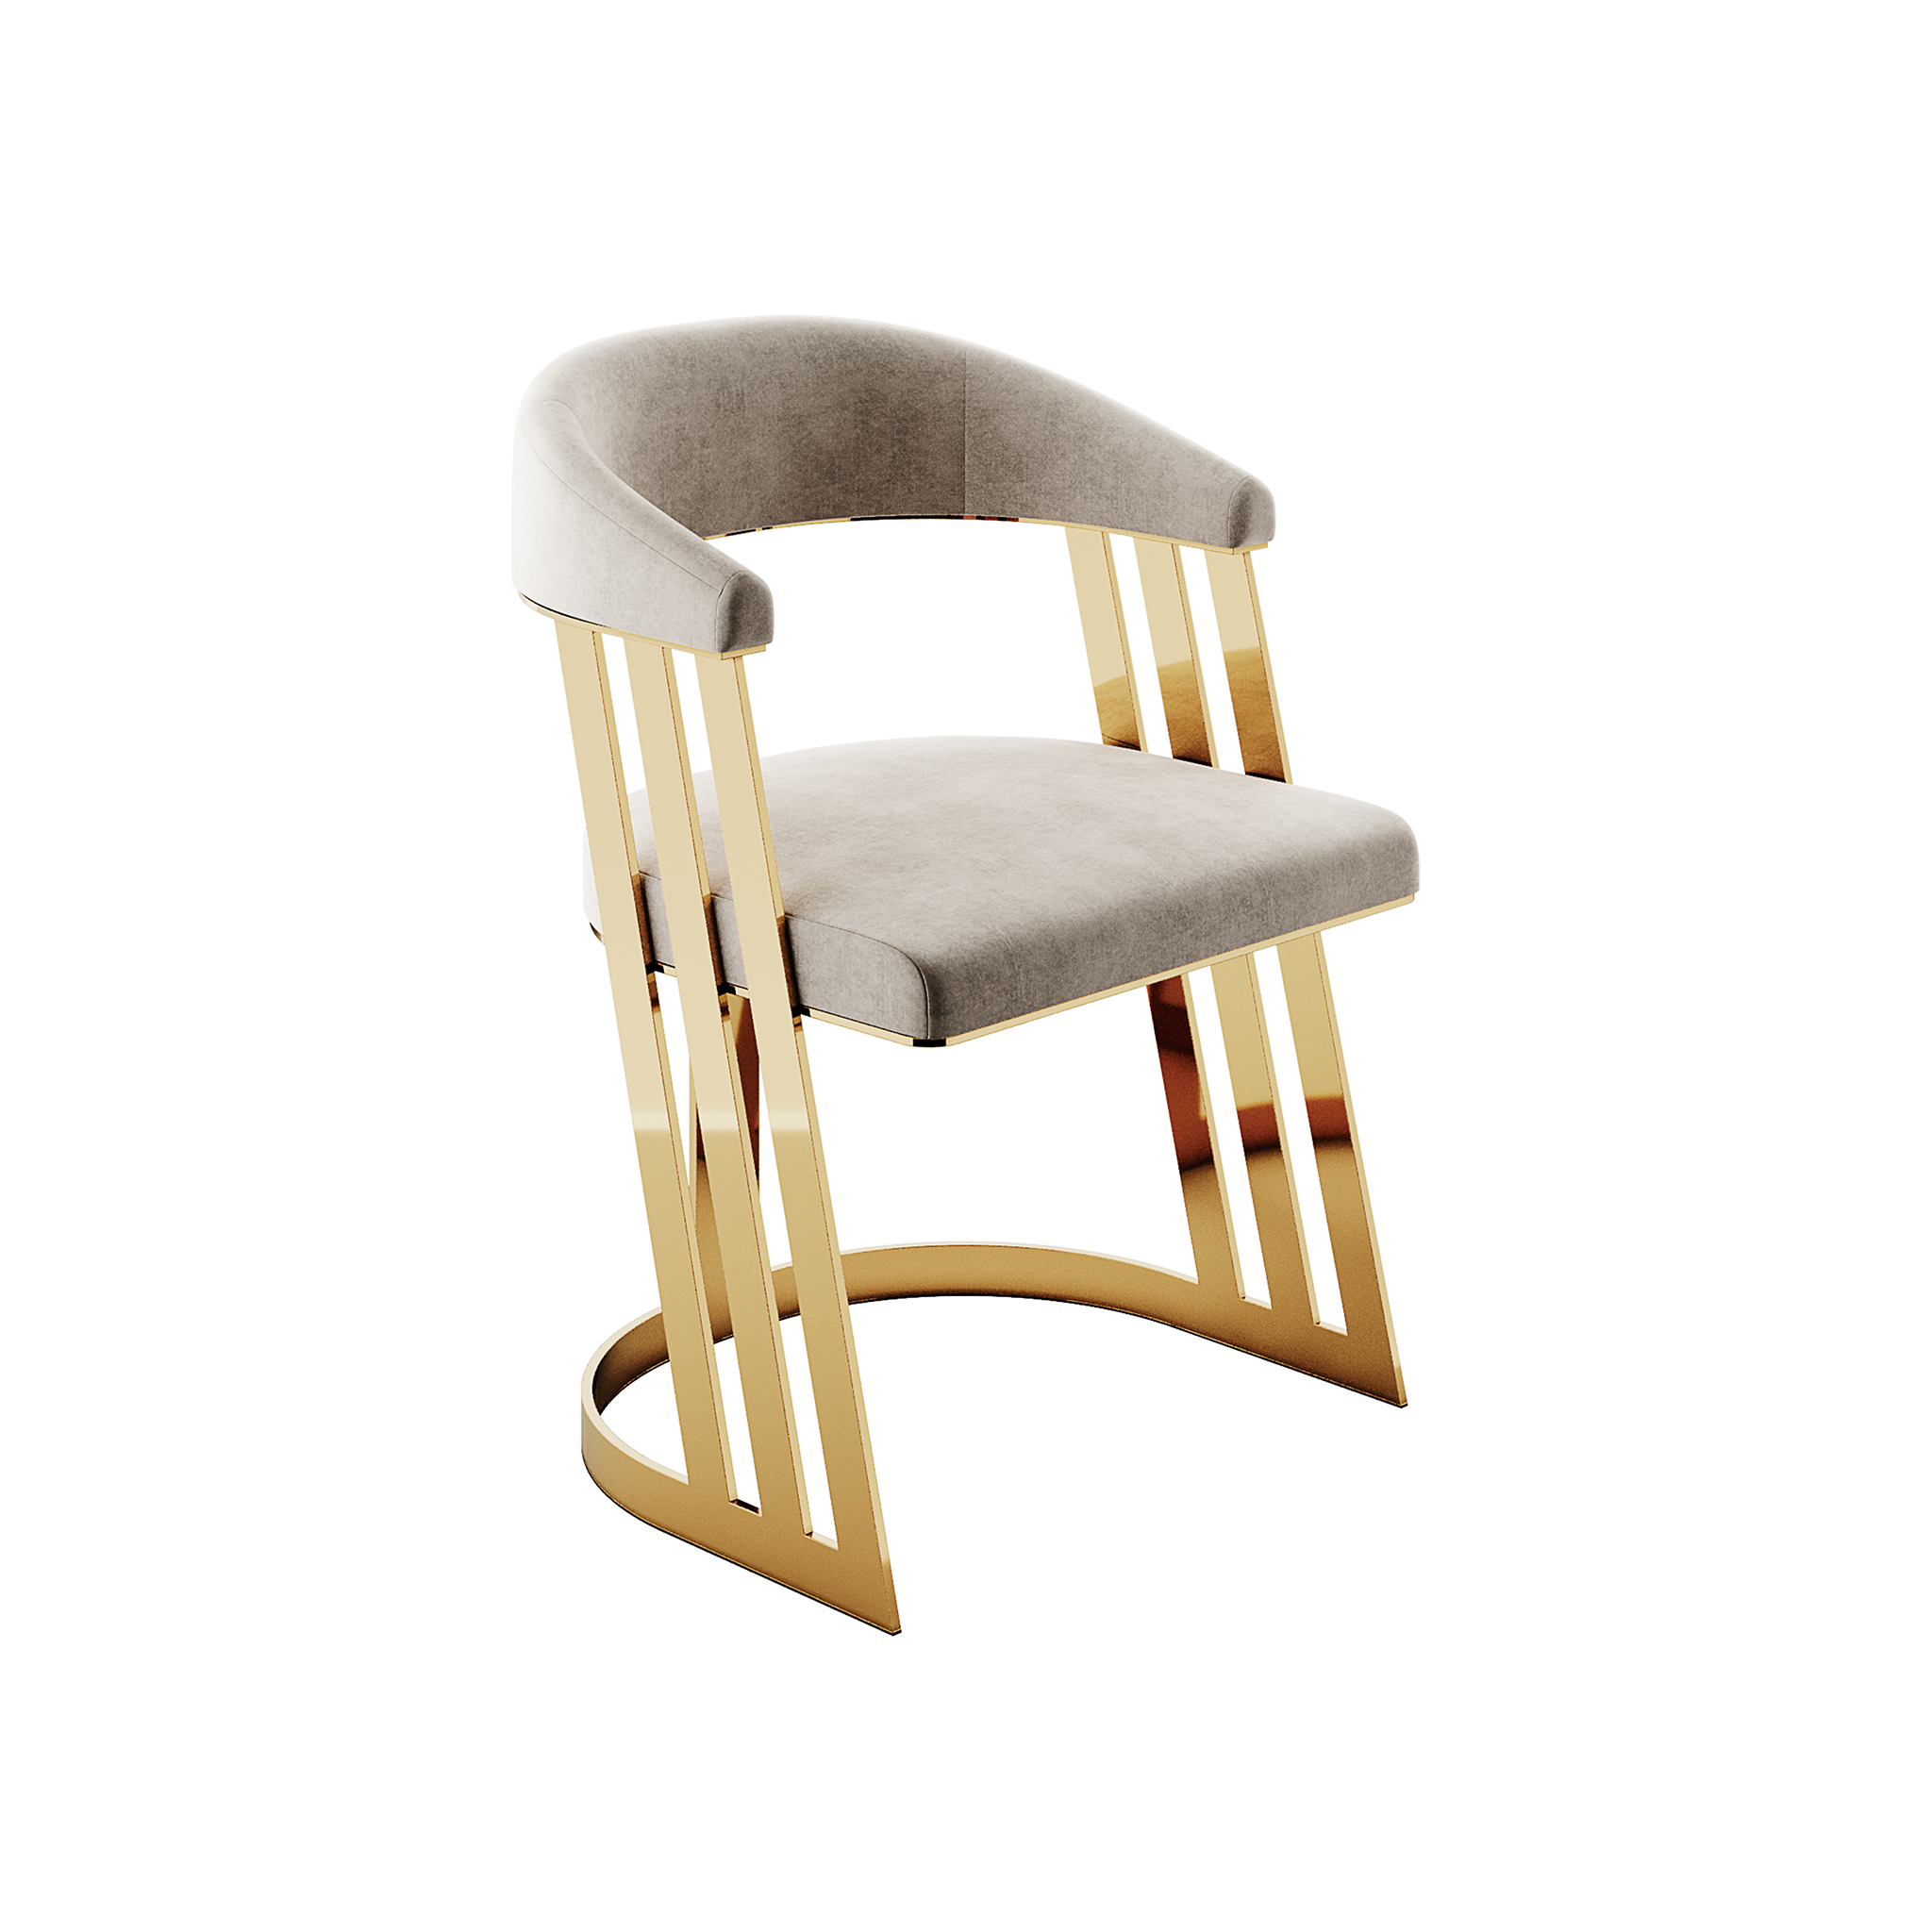 Karmen Dining Chair by Hommés Studio